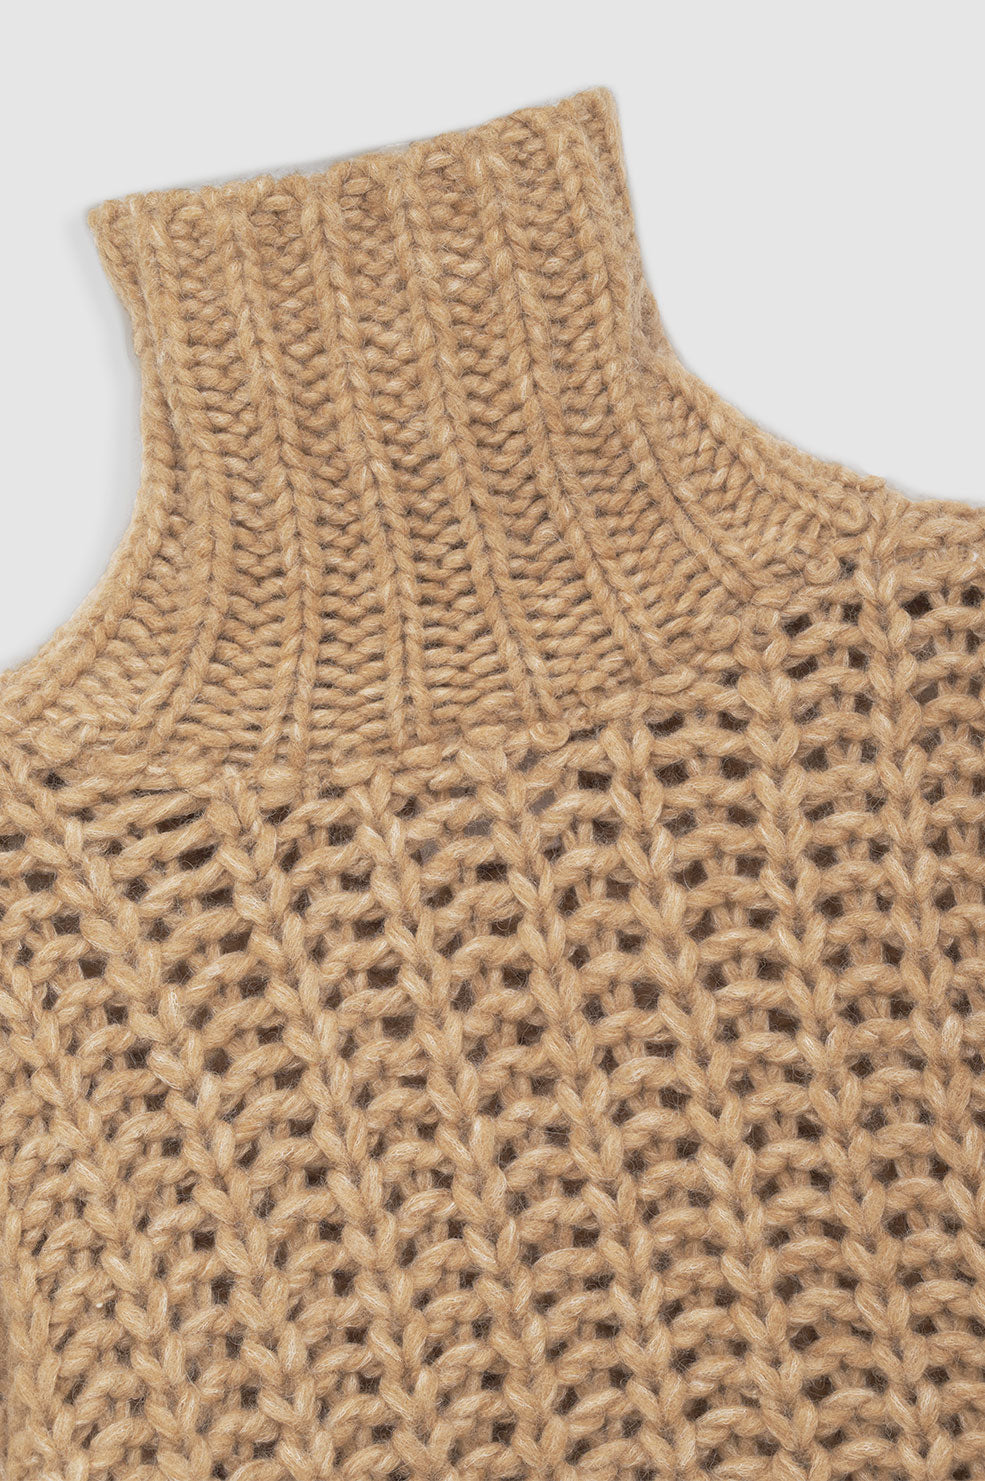 ANINE BING Iris Sweater - Camel - Detail View